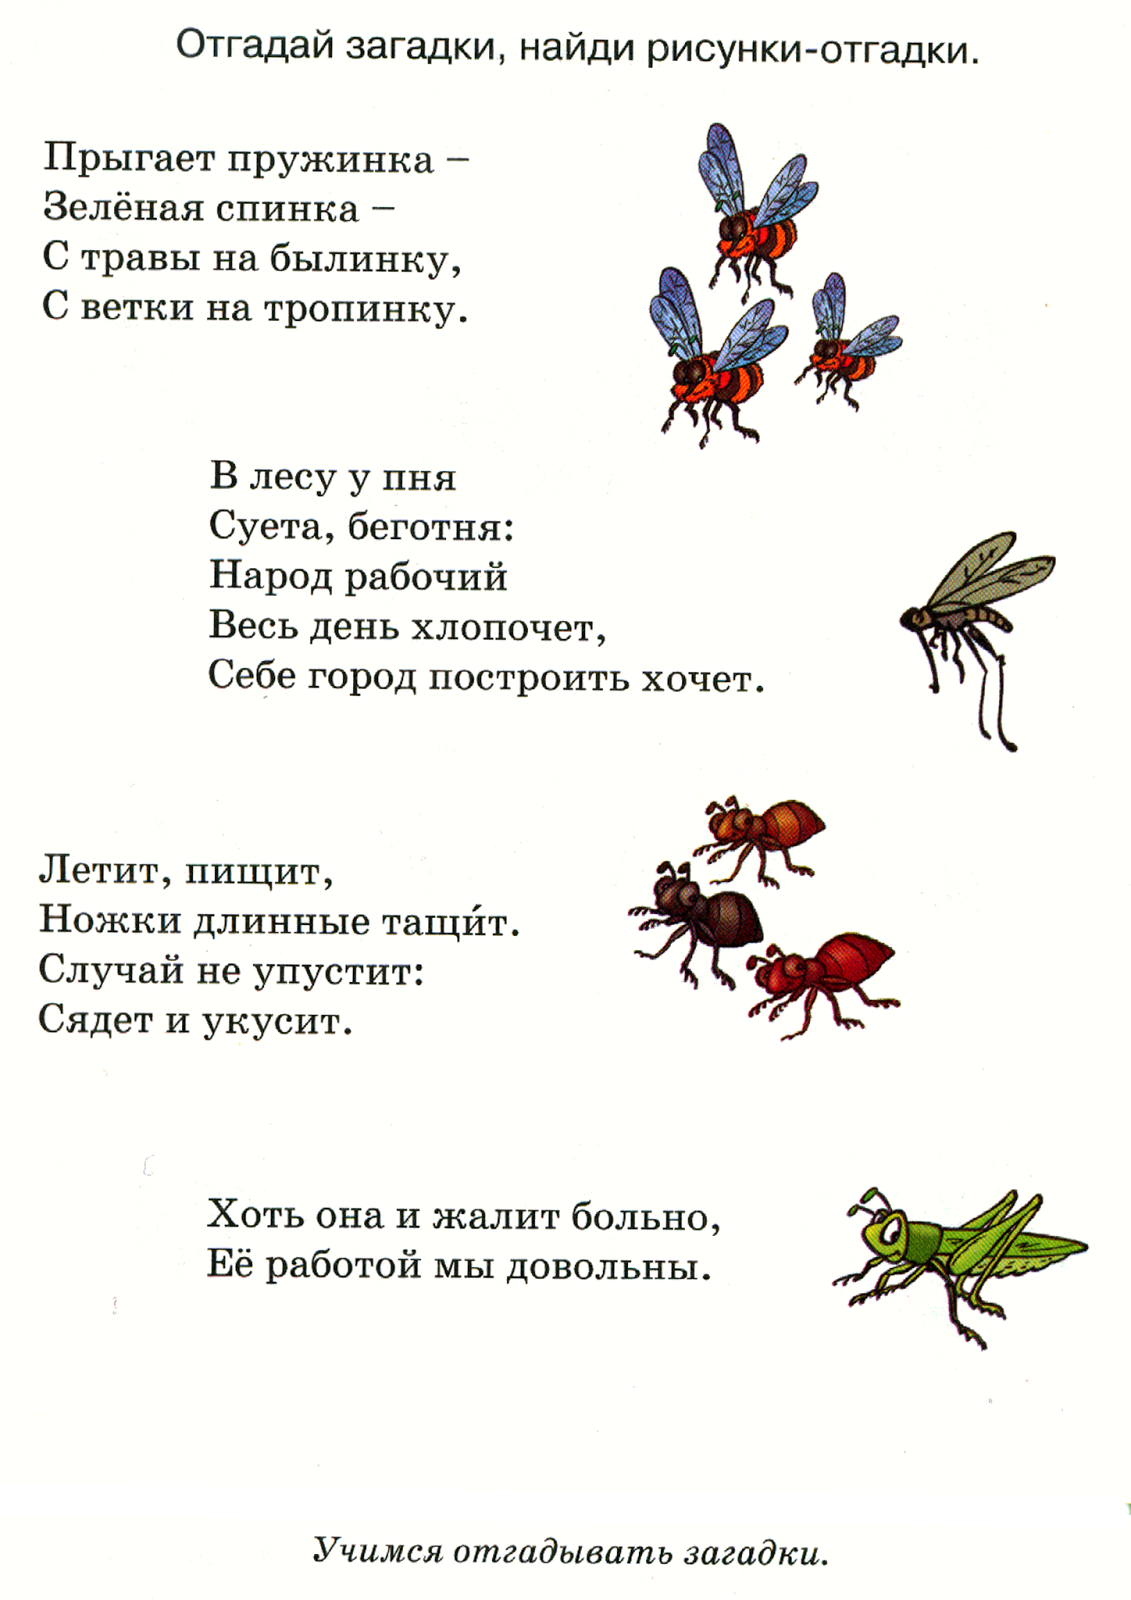 Загадки про насекомых для детей 6-7 лет с ответами - детский час